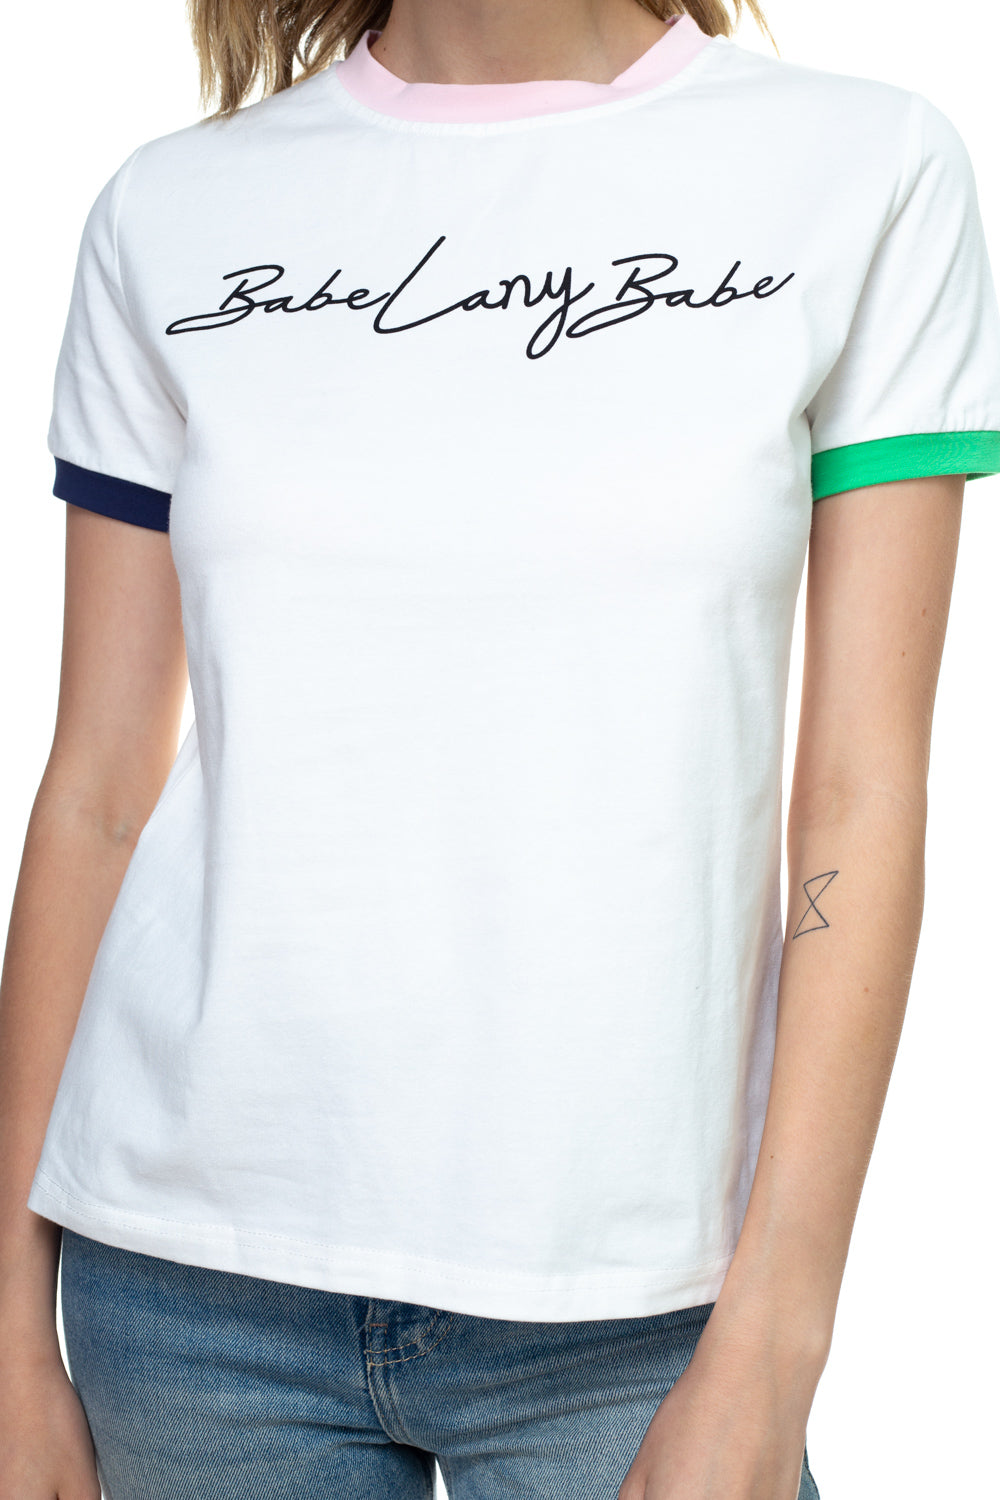 babe LANY babe shirt - LANY